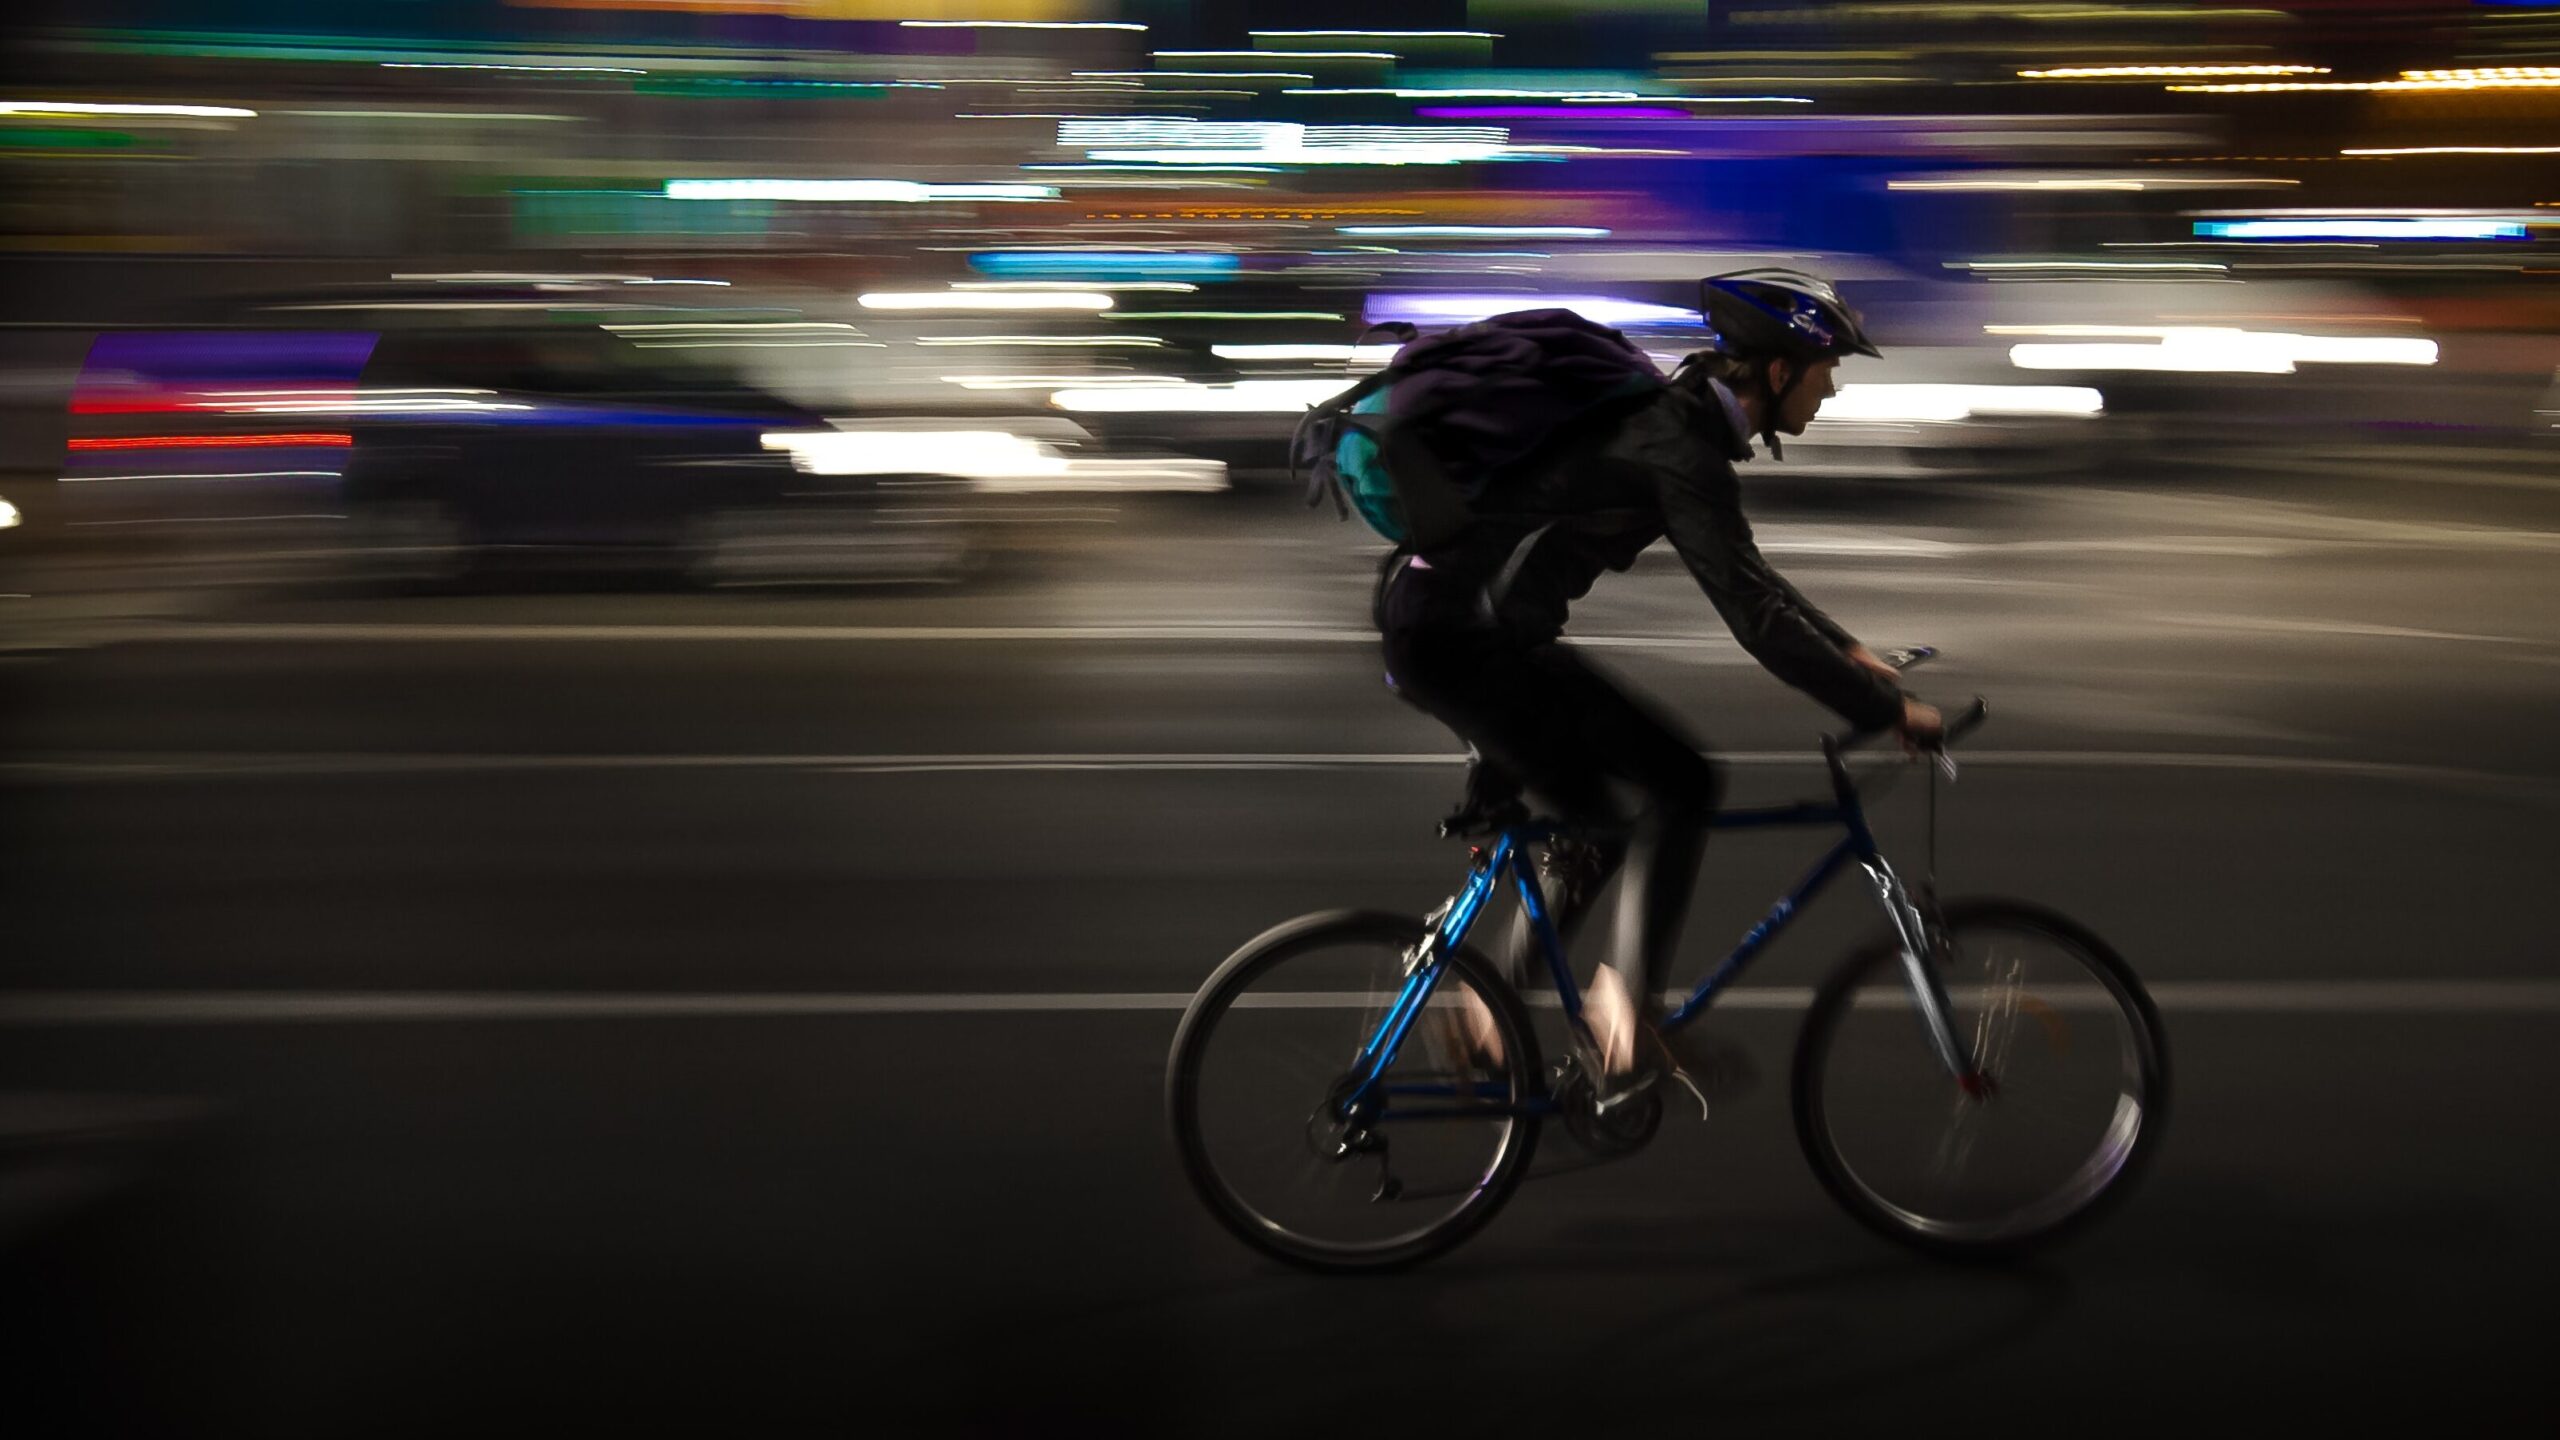 Bicycling at night